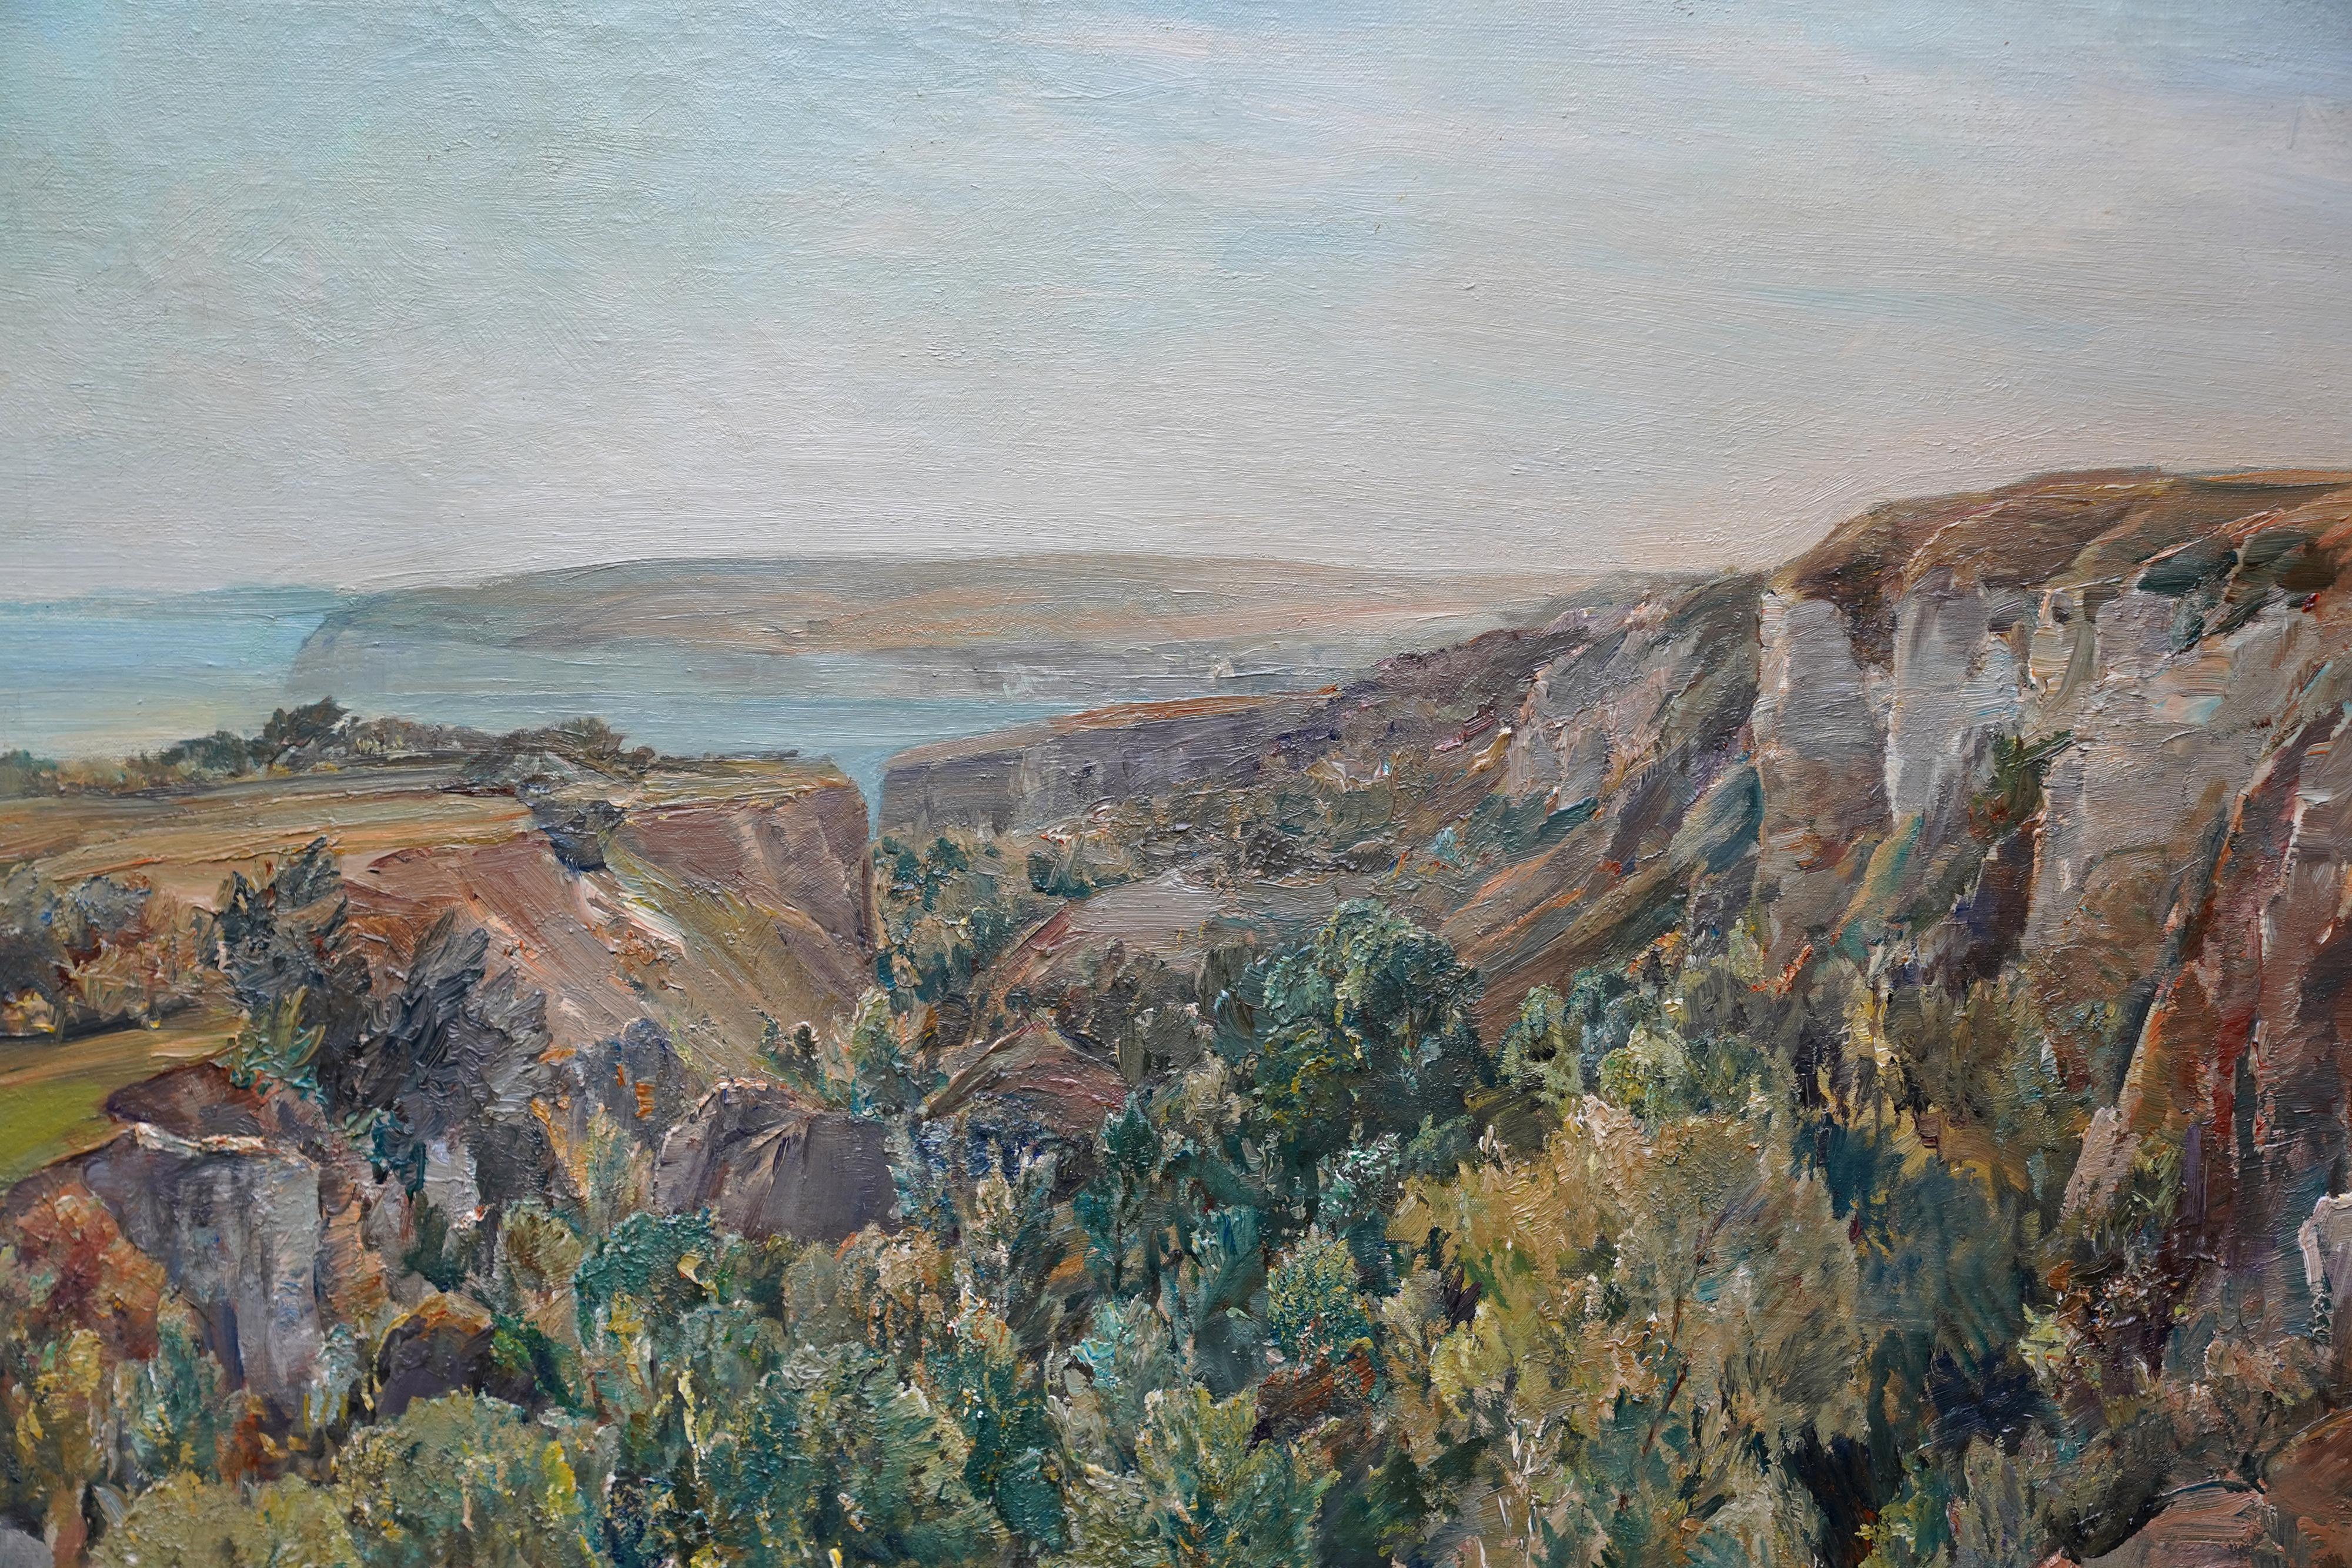 Dieses schöne, ausgestellte Landschafts-Ölgemälde stammt von der britischen Künstlerin Evelyn Cheston vom New English Art Club. Es wurde um 1920 gemalt, als Cheston in Devon ansässig war. Die Aussicht ist eine Küstenlandschaft mit Erdrutschen. Das